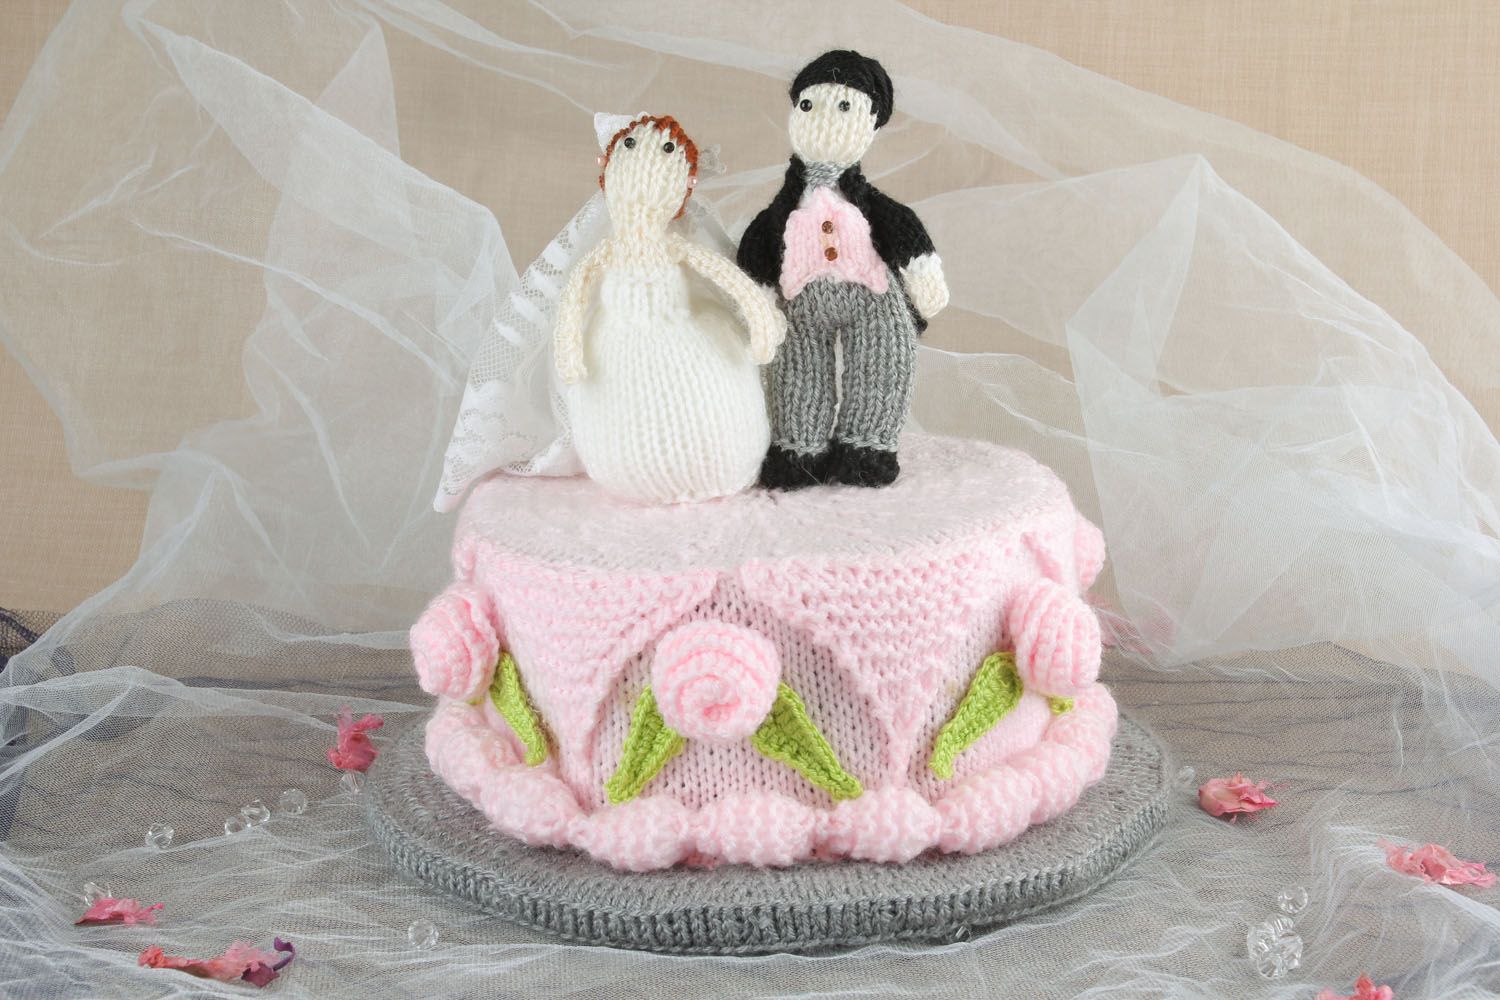 Décoration jouet tricoté gâteau de mariage photo 1